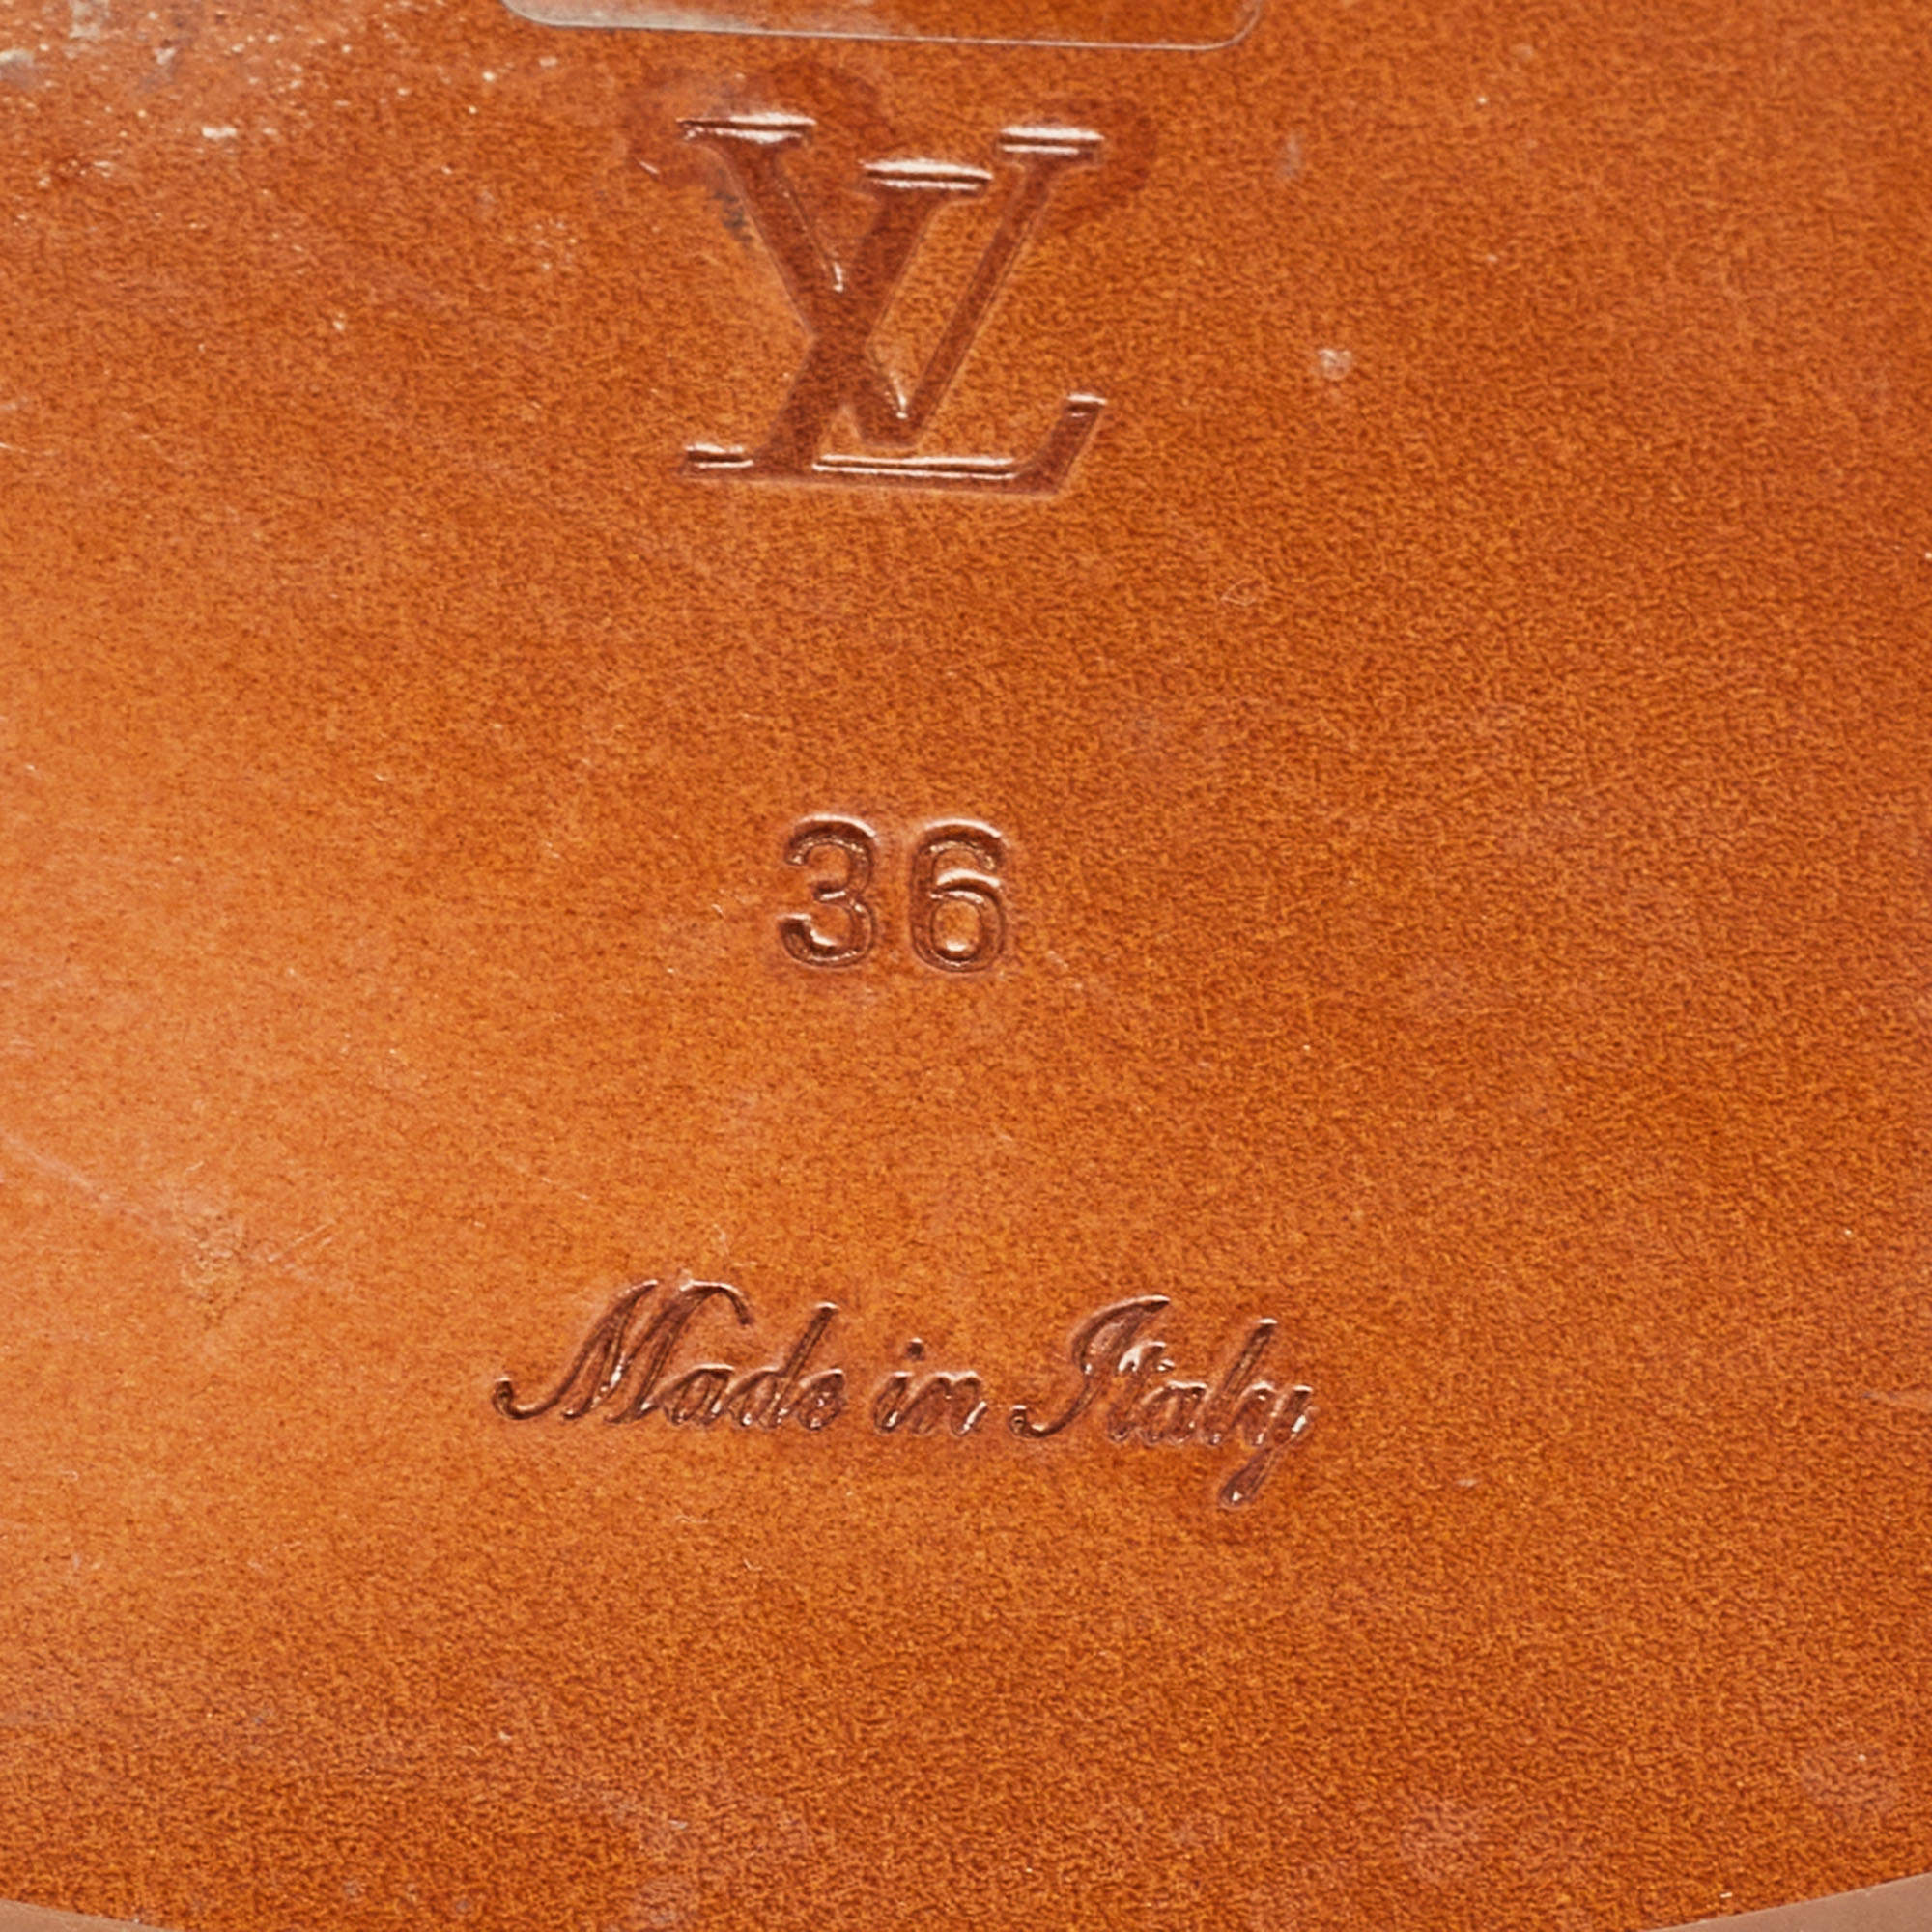 Sandal Louis Vuitton Brown size 36 EU in Fur - 33667833